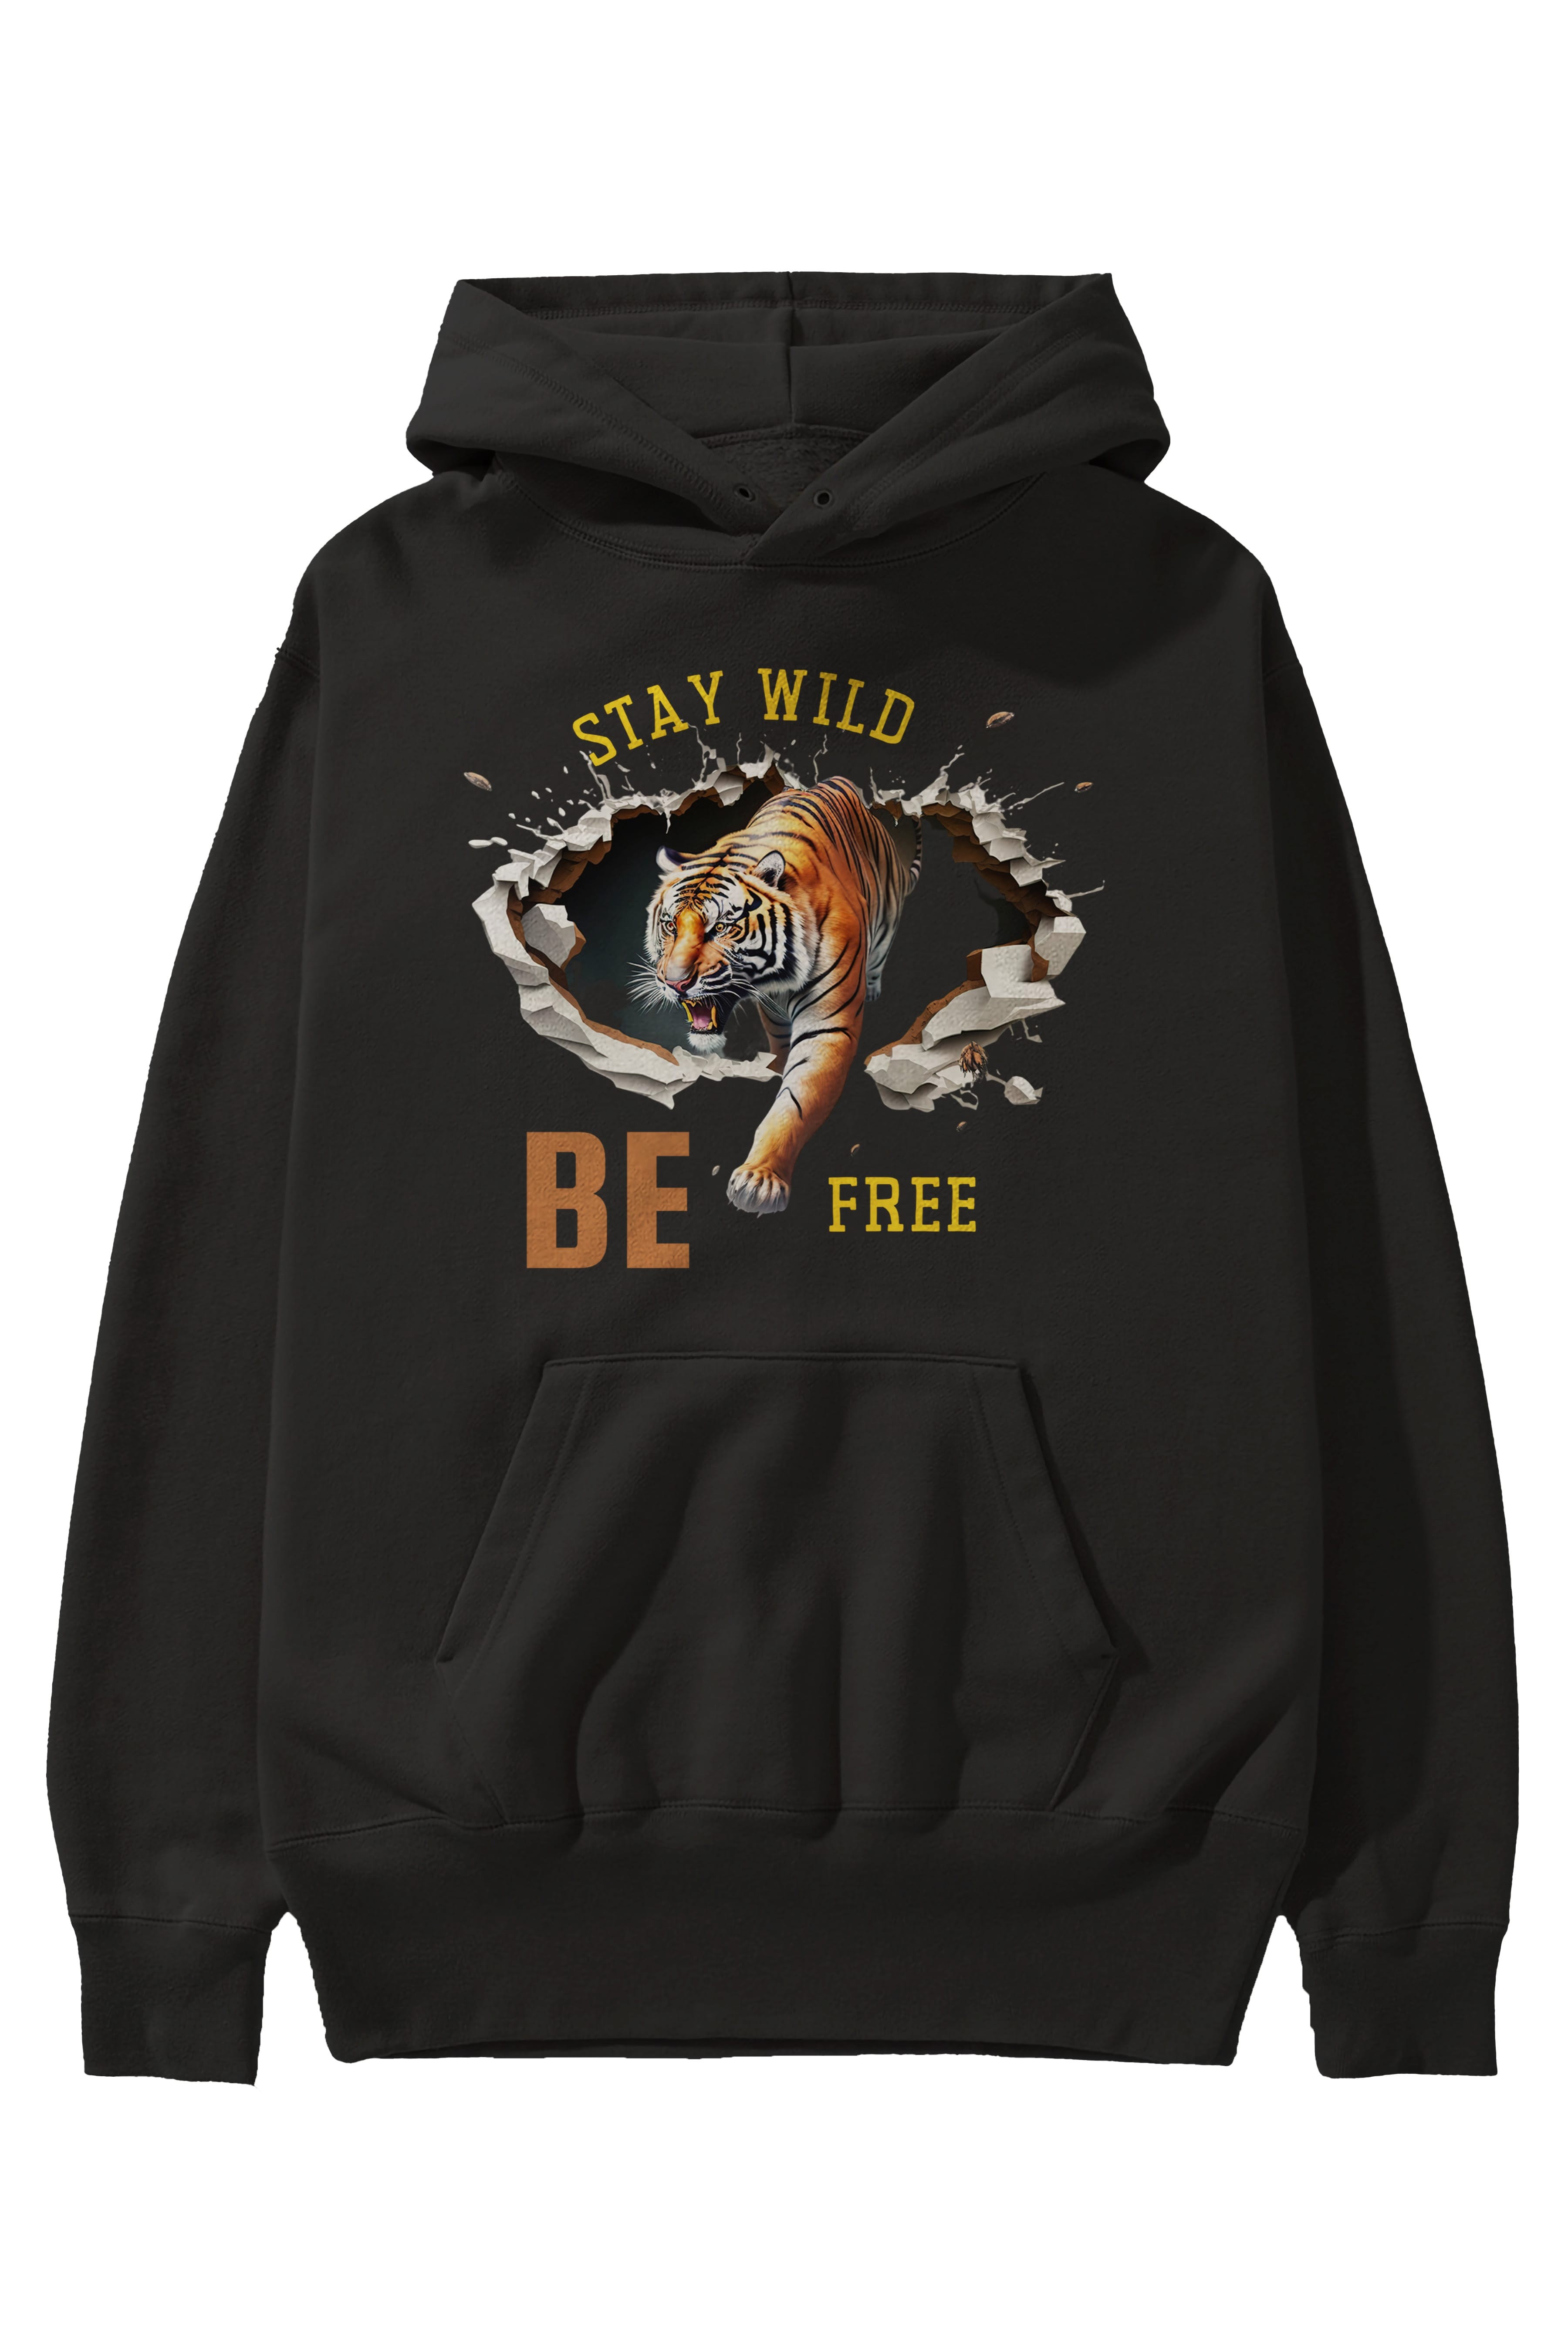 Stay Wild Be Free Yazılı Ön Baskılı Oversize Hoodie Kapüşonlu Sweatshirt Erkek Kadın Unisex